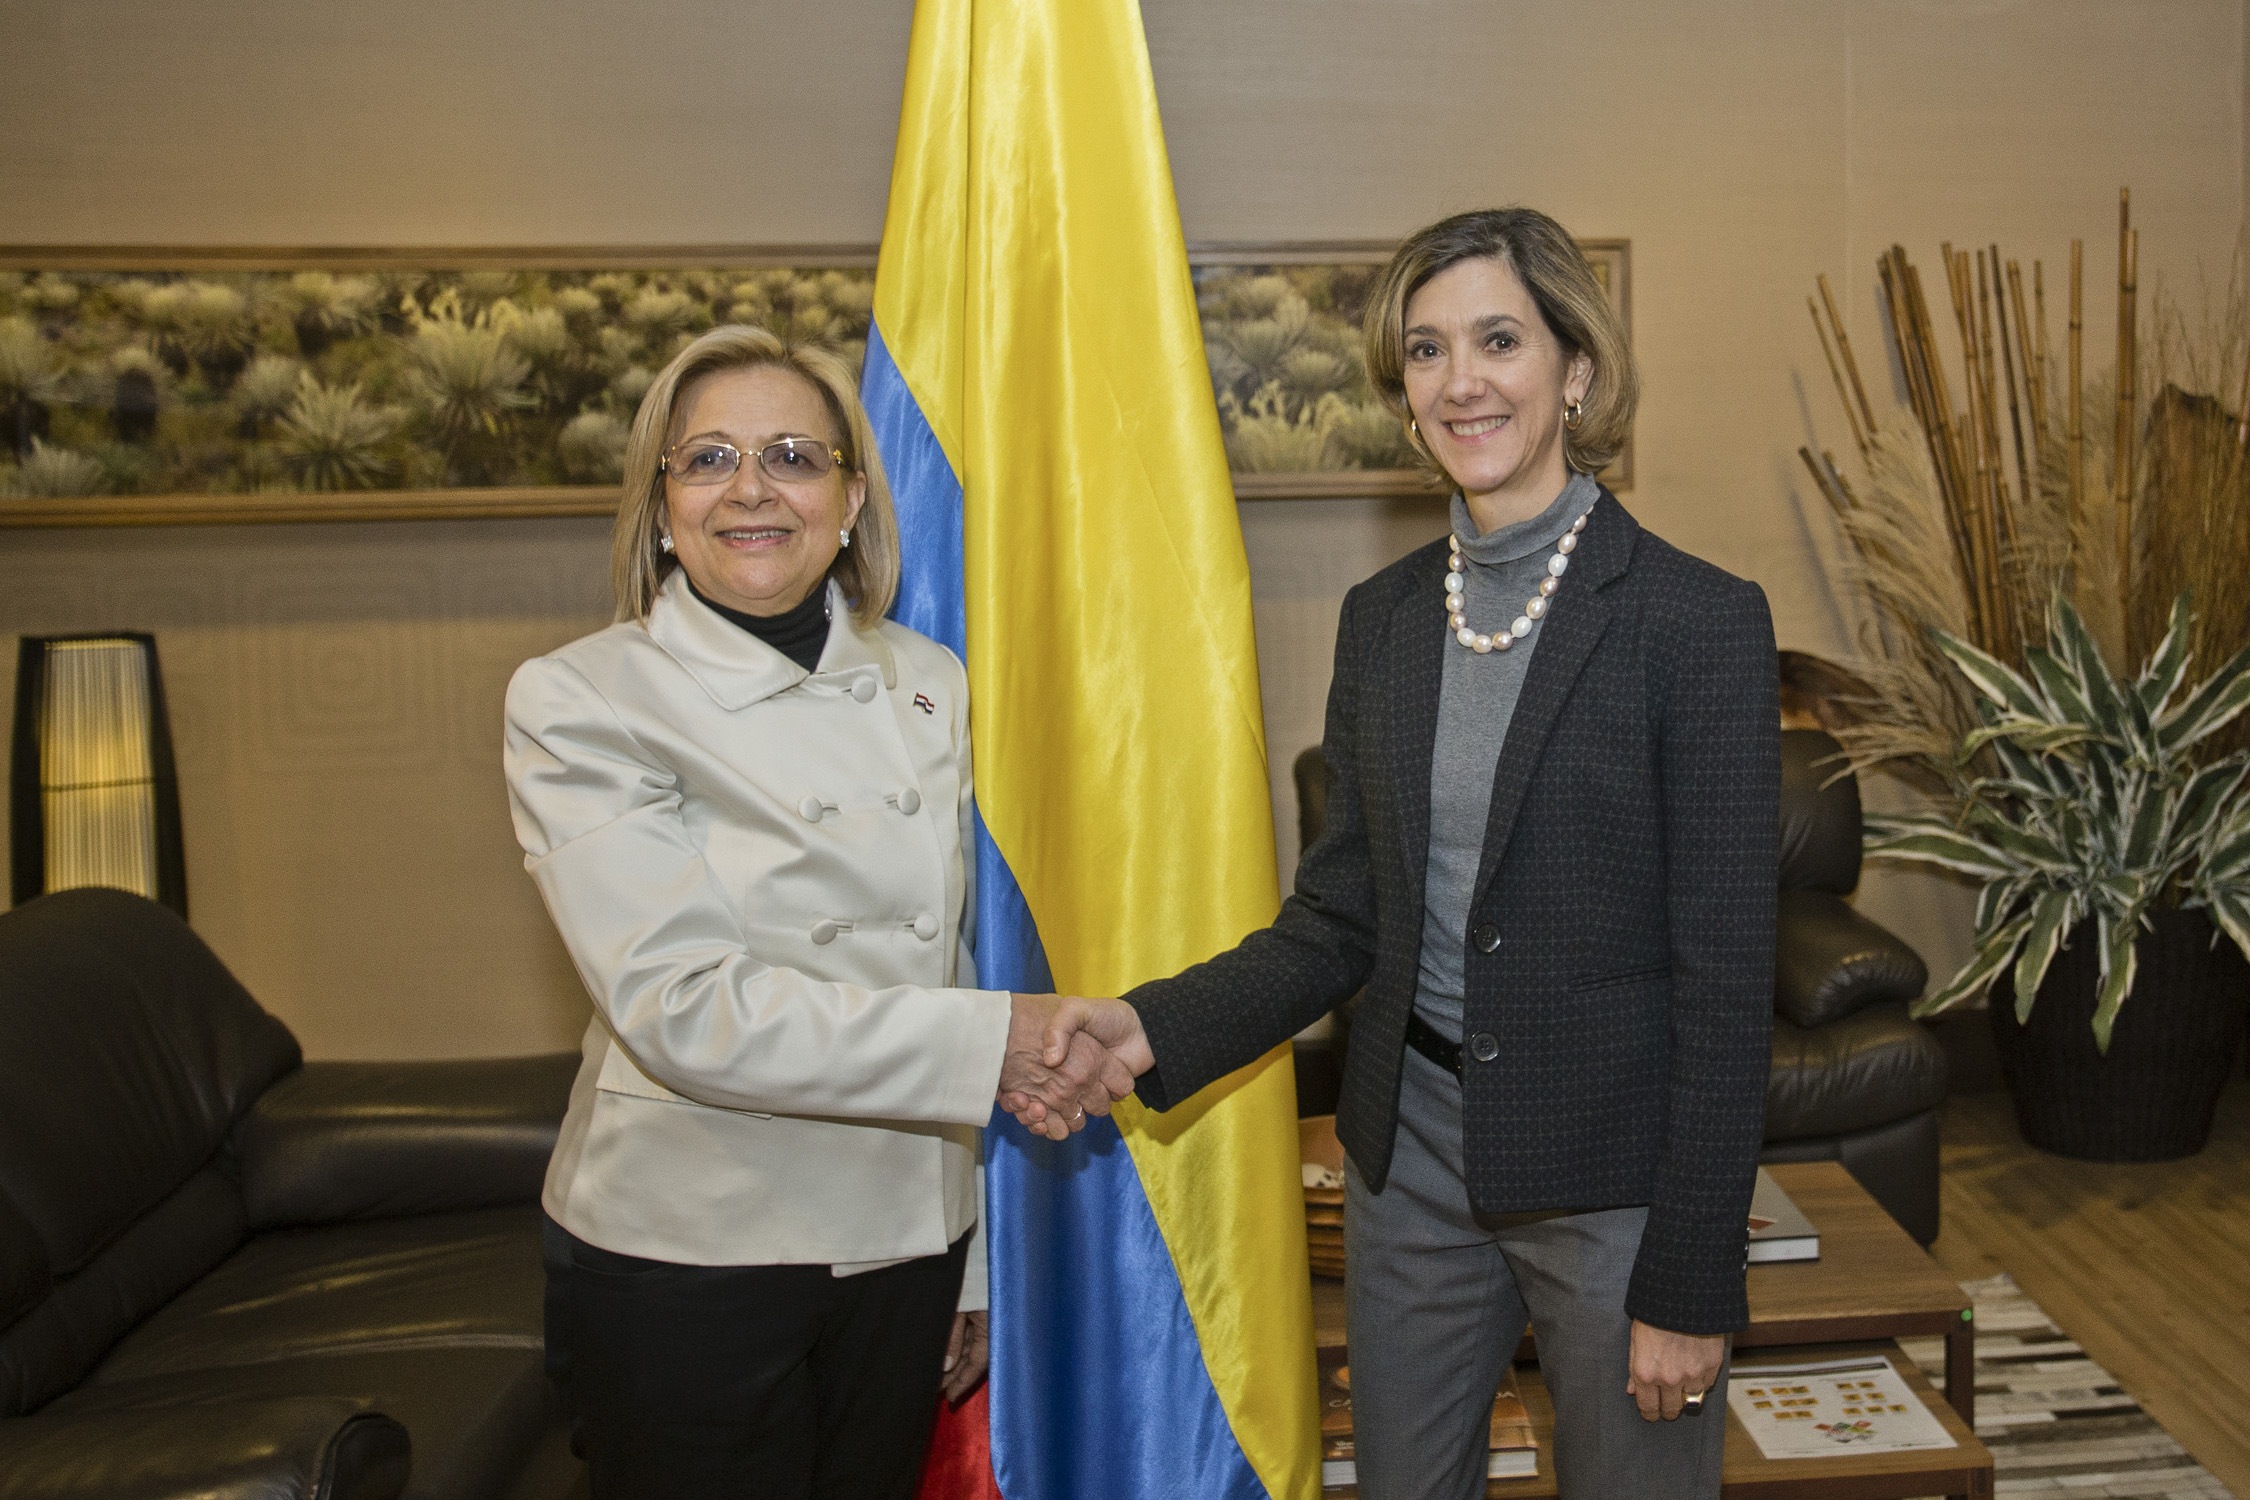 Vicepresidenta del Paraguay, Alicia Pucheta llegó a Bogotá para la ceremonia de transmisión de mando presidencial